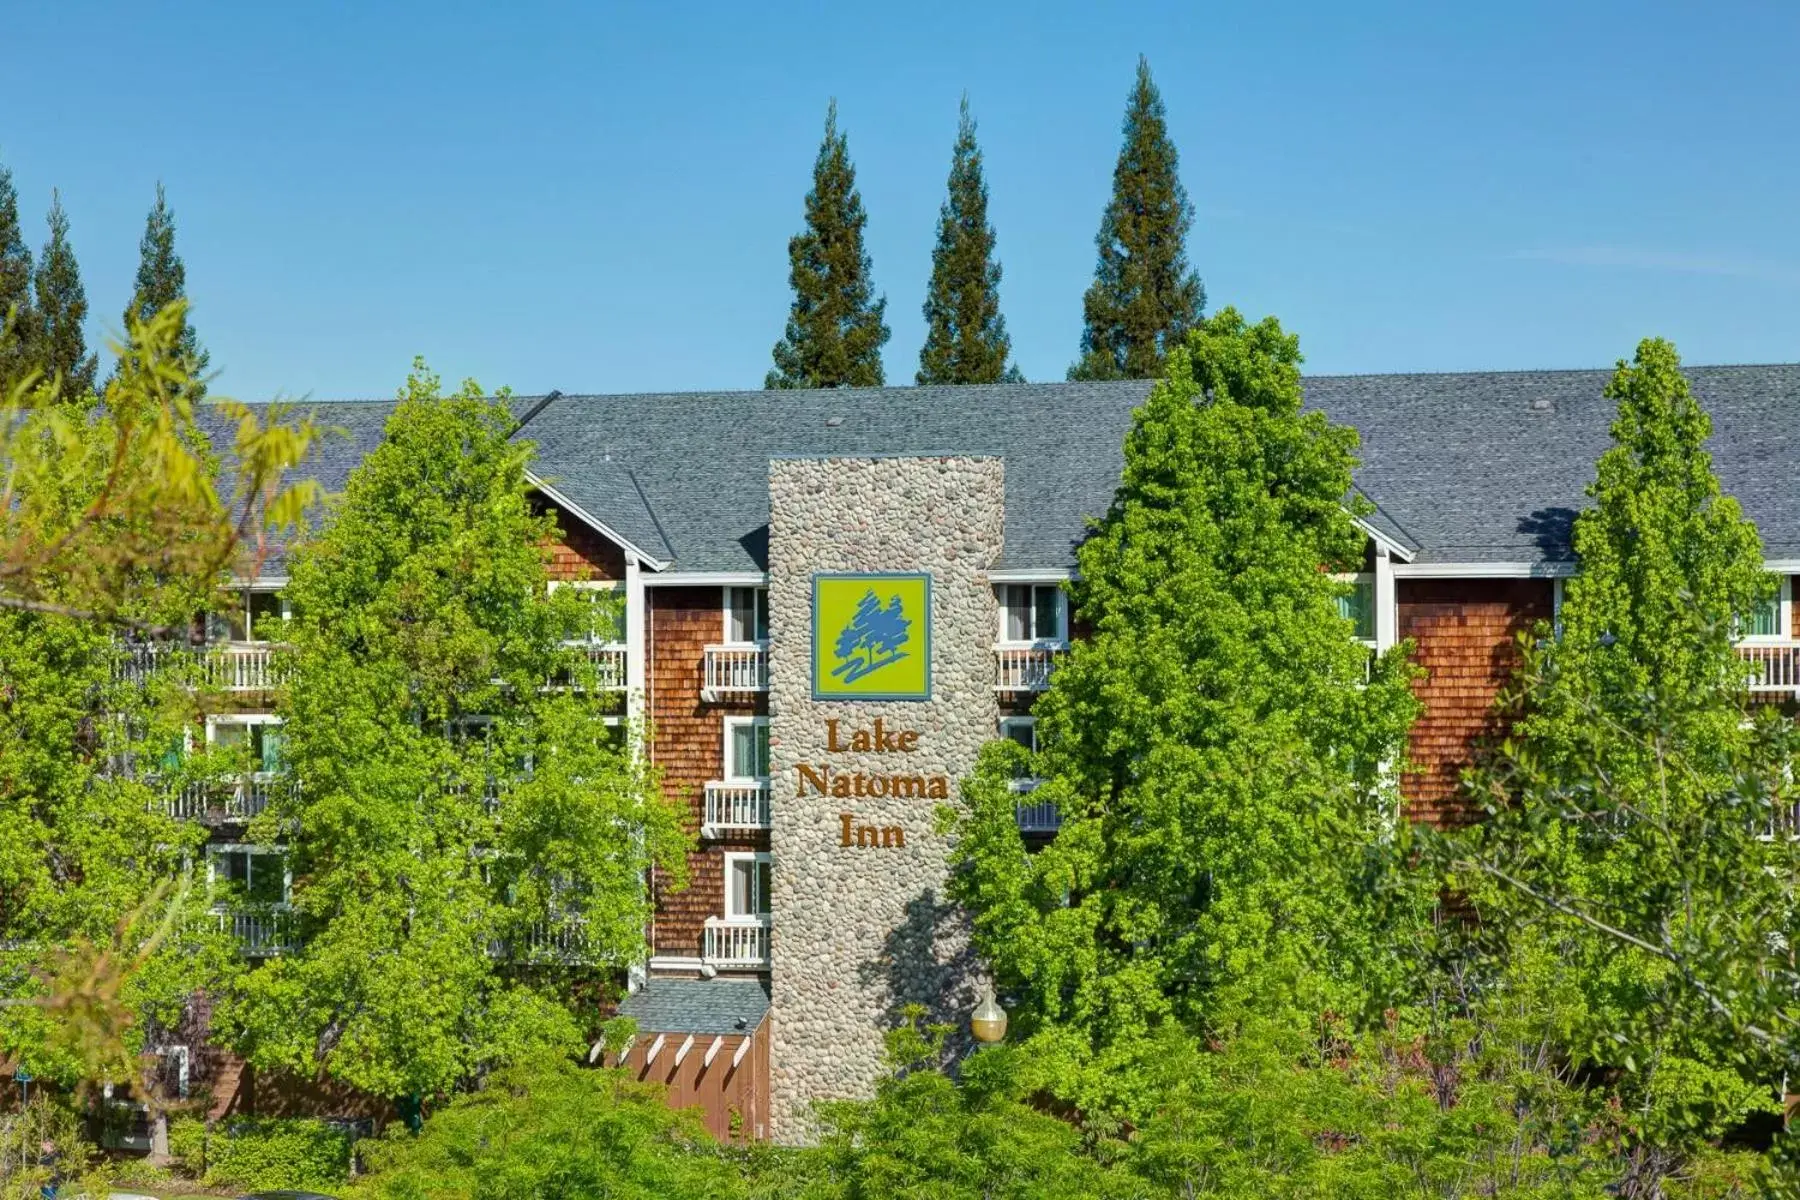 Property Building in Lake Natoma Inn